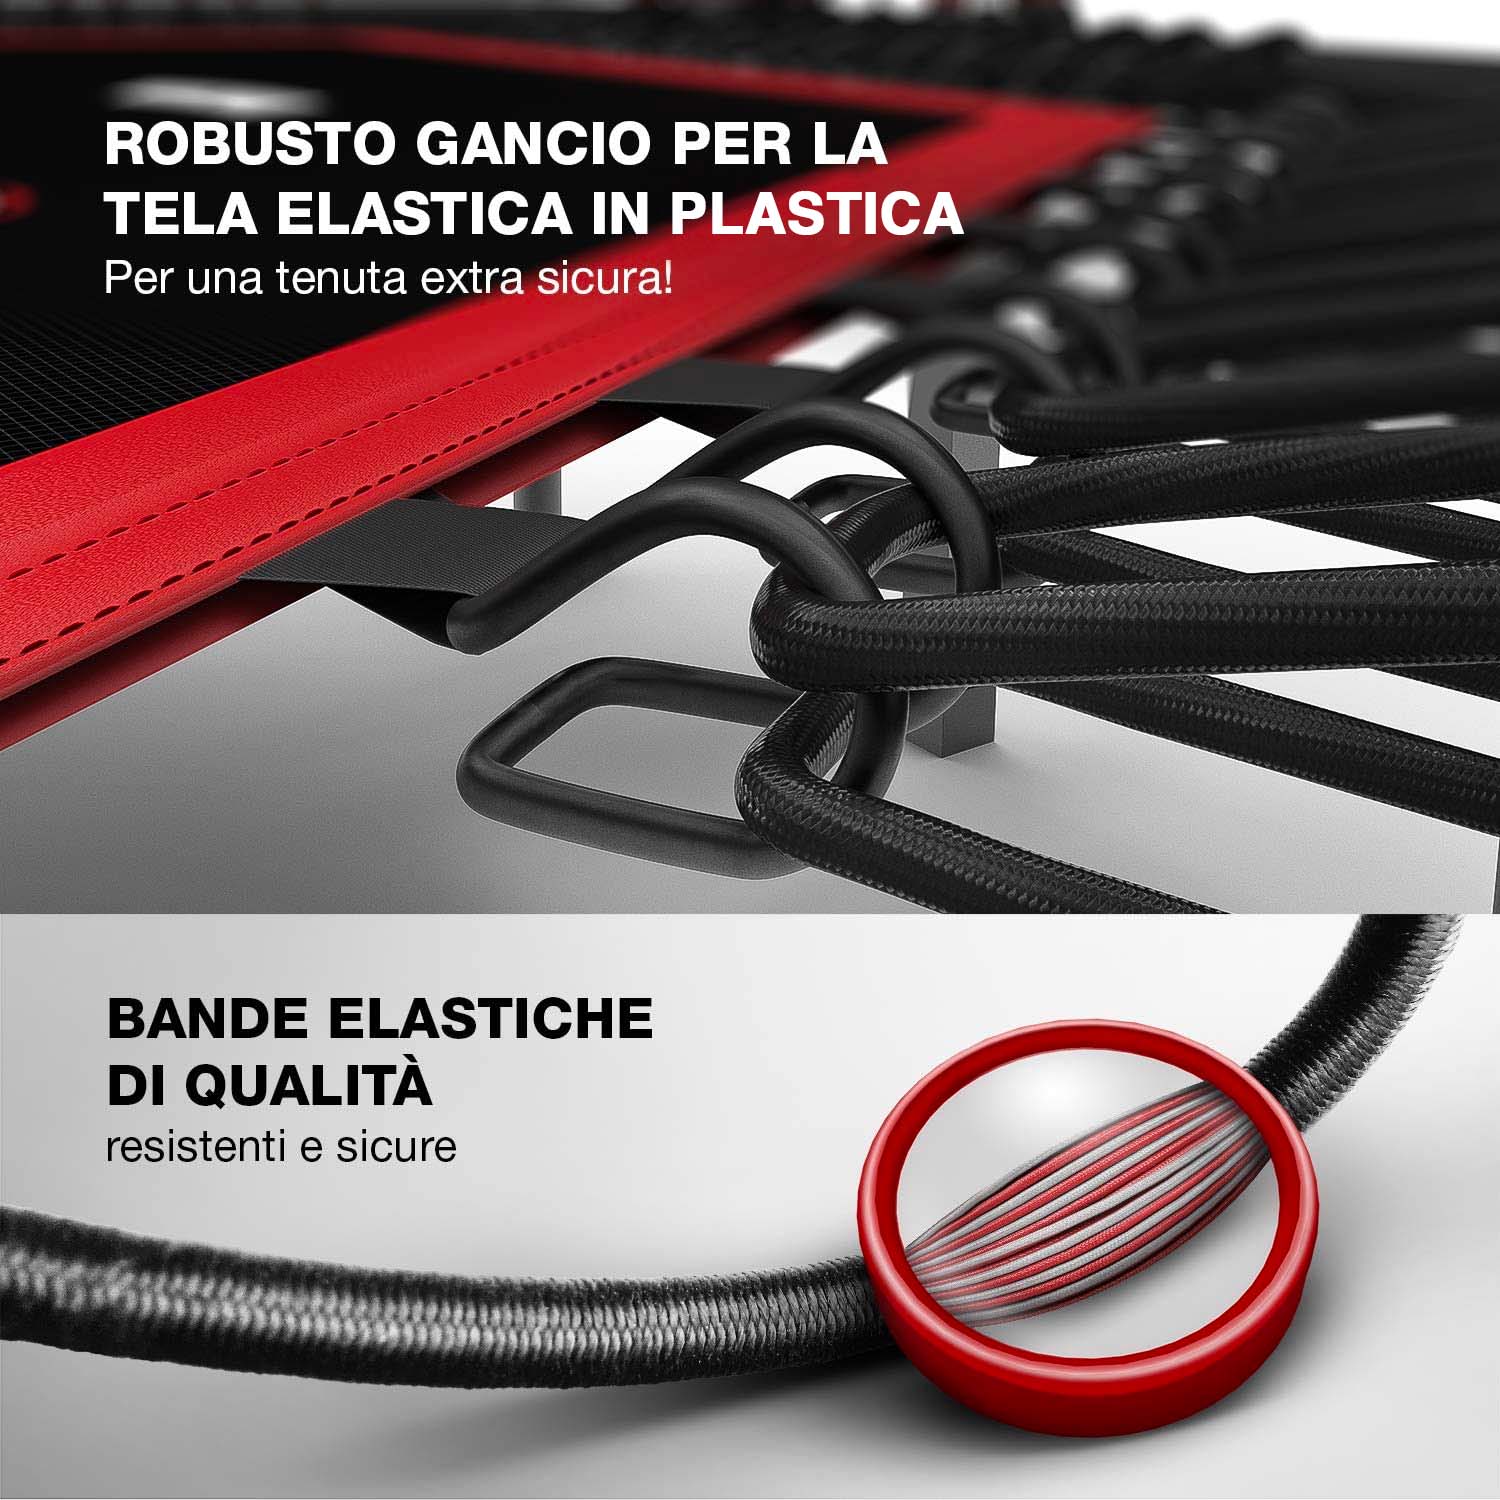 Boudech - Trampolino elastico crossfit per allenamento fitness funzionale con contasalti portacellulare e portabevande